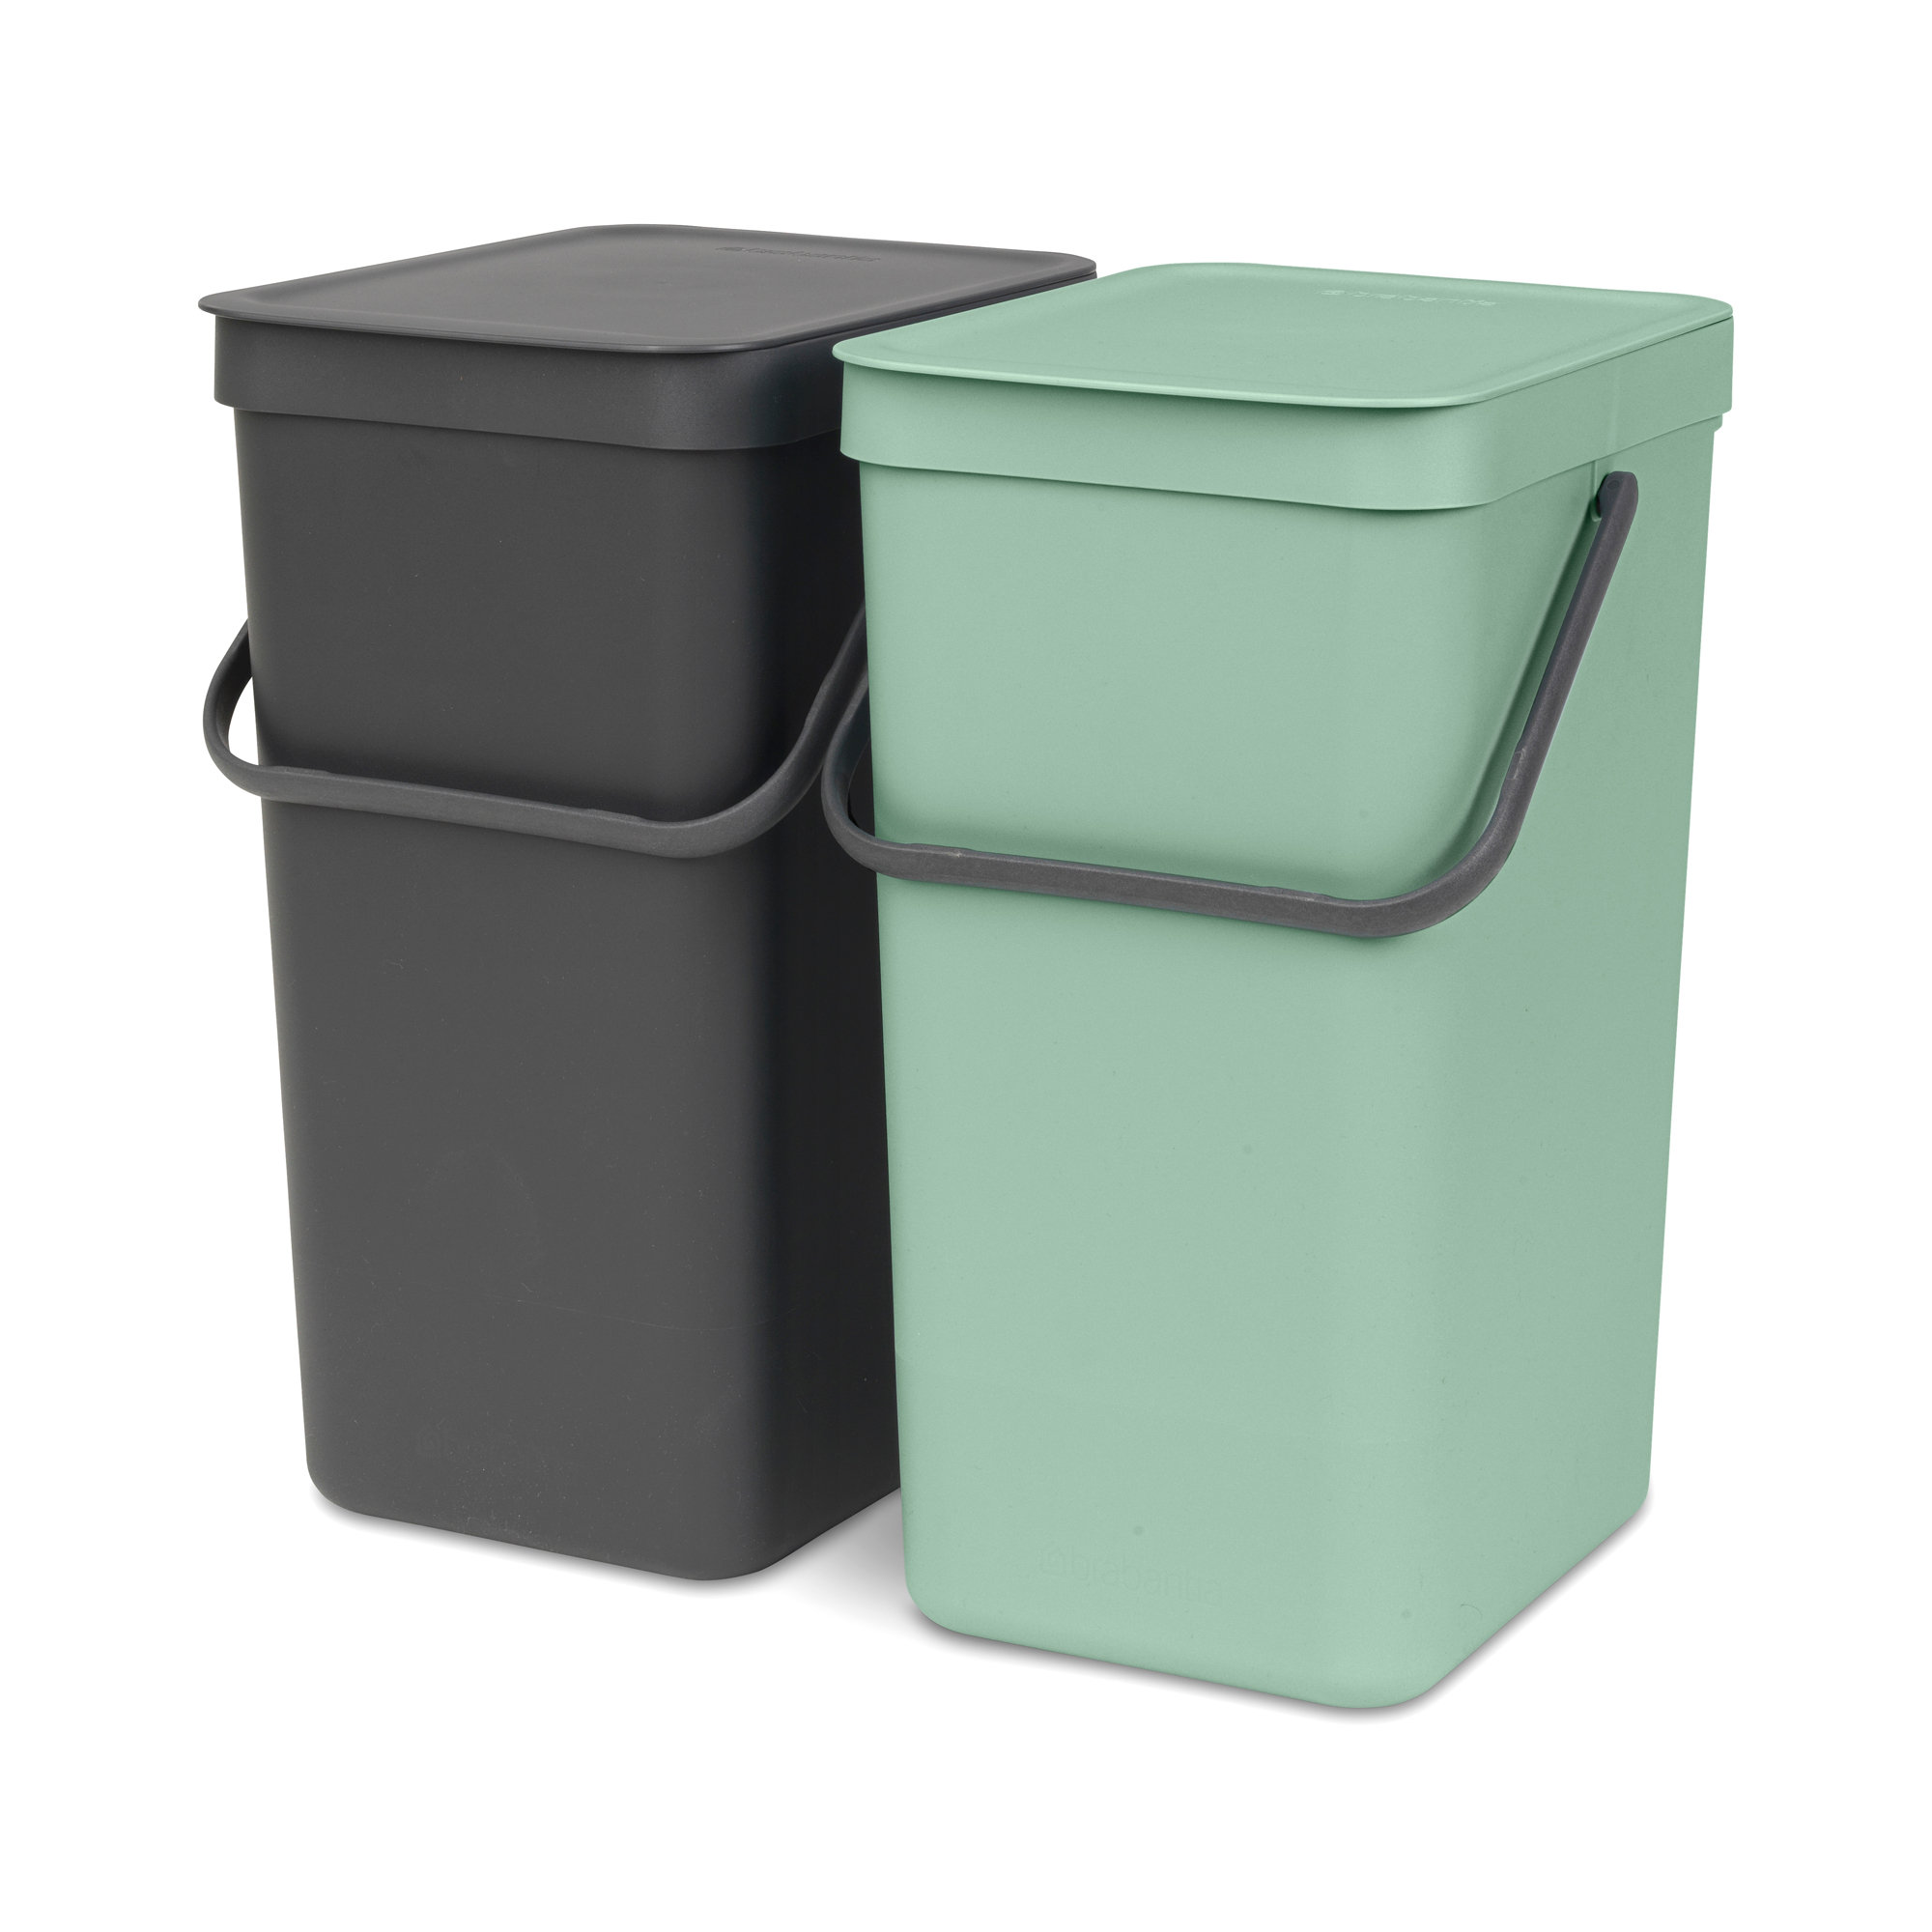 Brabantia Sort & Go In-Cabinet Recycling Set | Wayfair